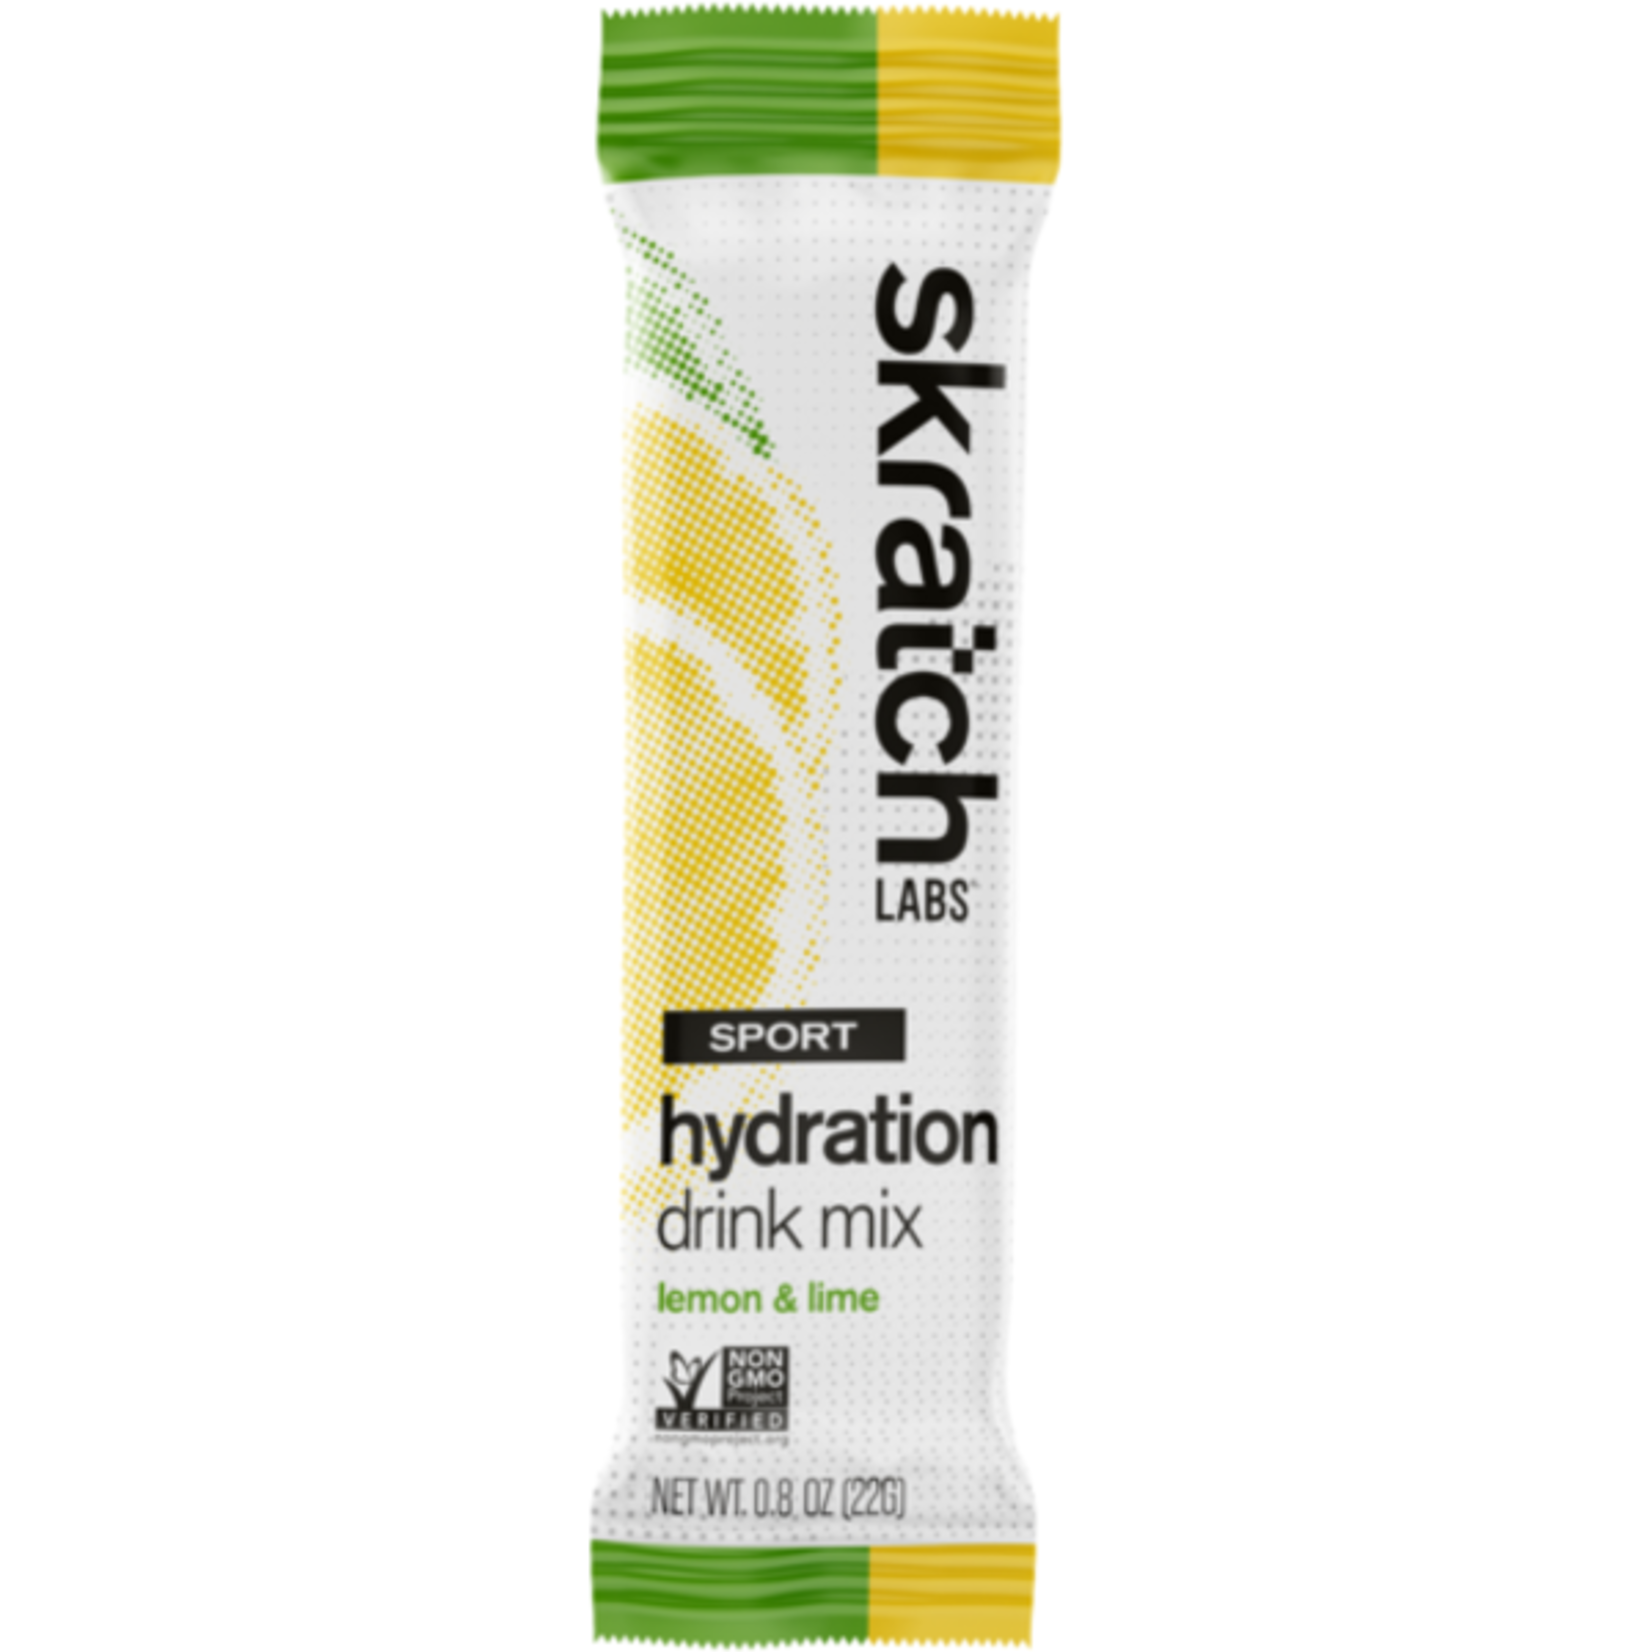 Skratch Skratch Labs - Sport Hydration Drink Mix single